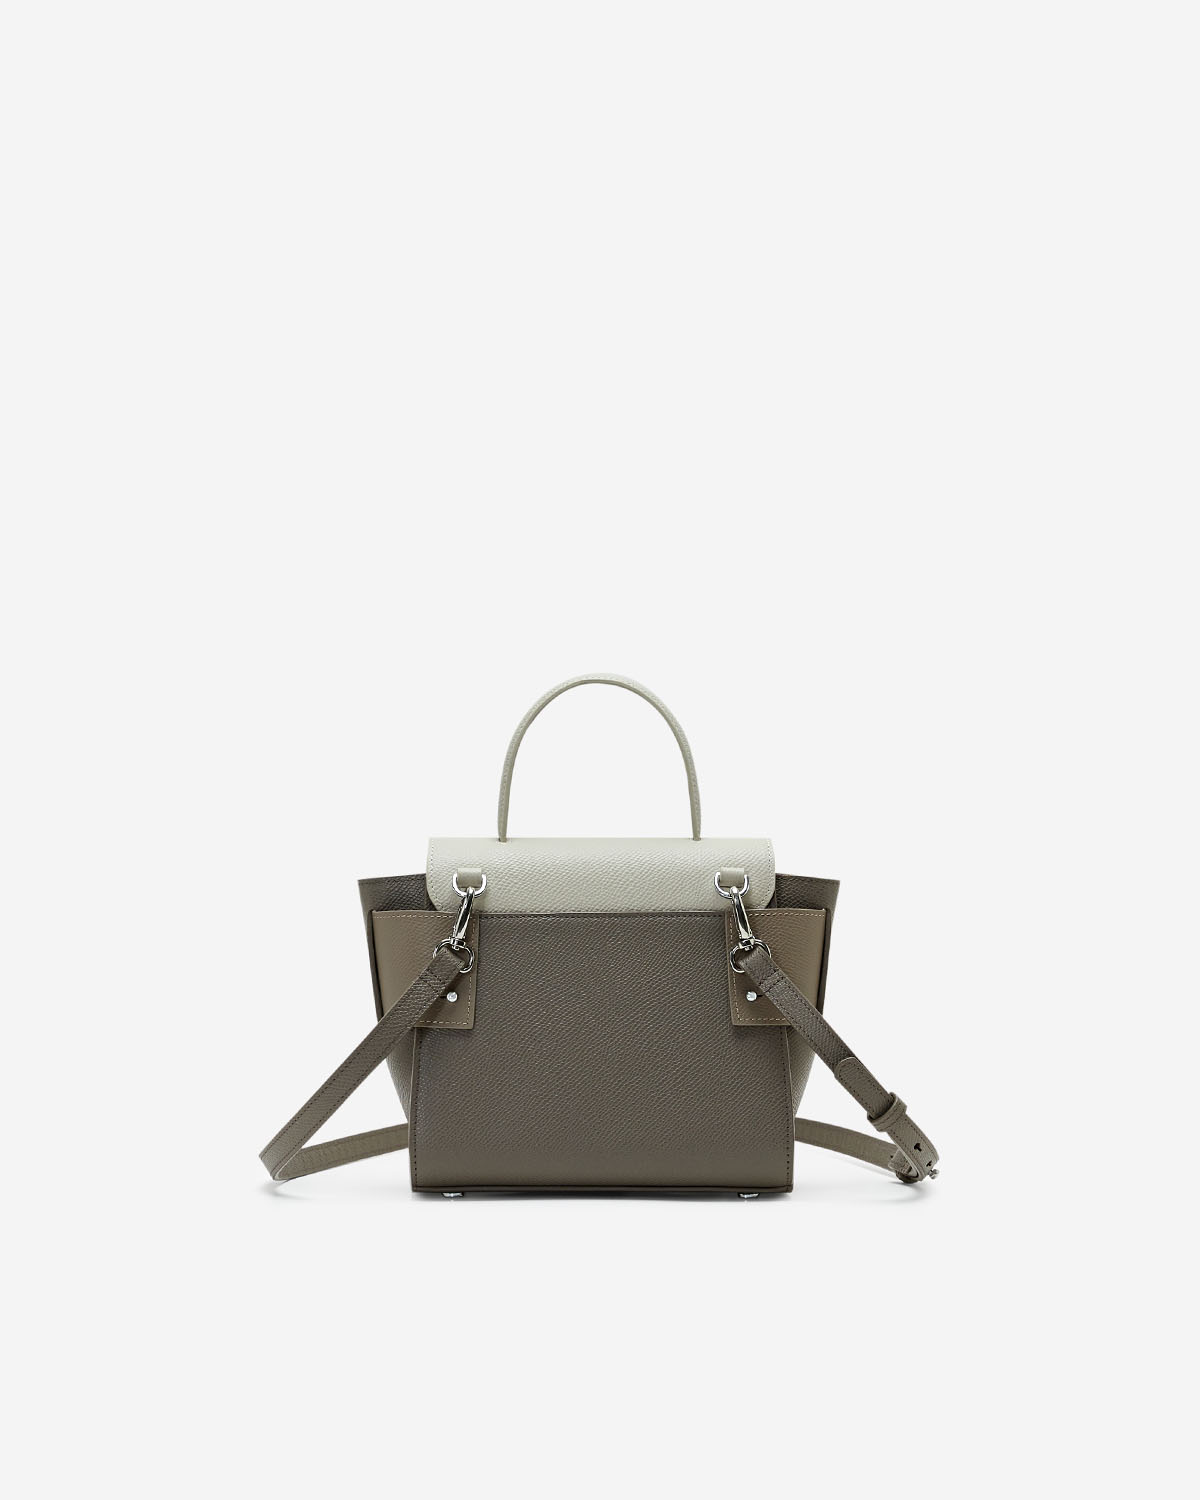 กระเป๋าถือหนังแท้ VERA Margo Leather Handbag, Size 20 สี Perfect Taupe